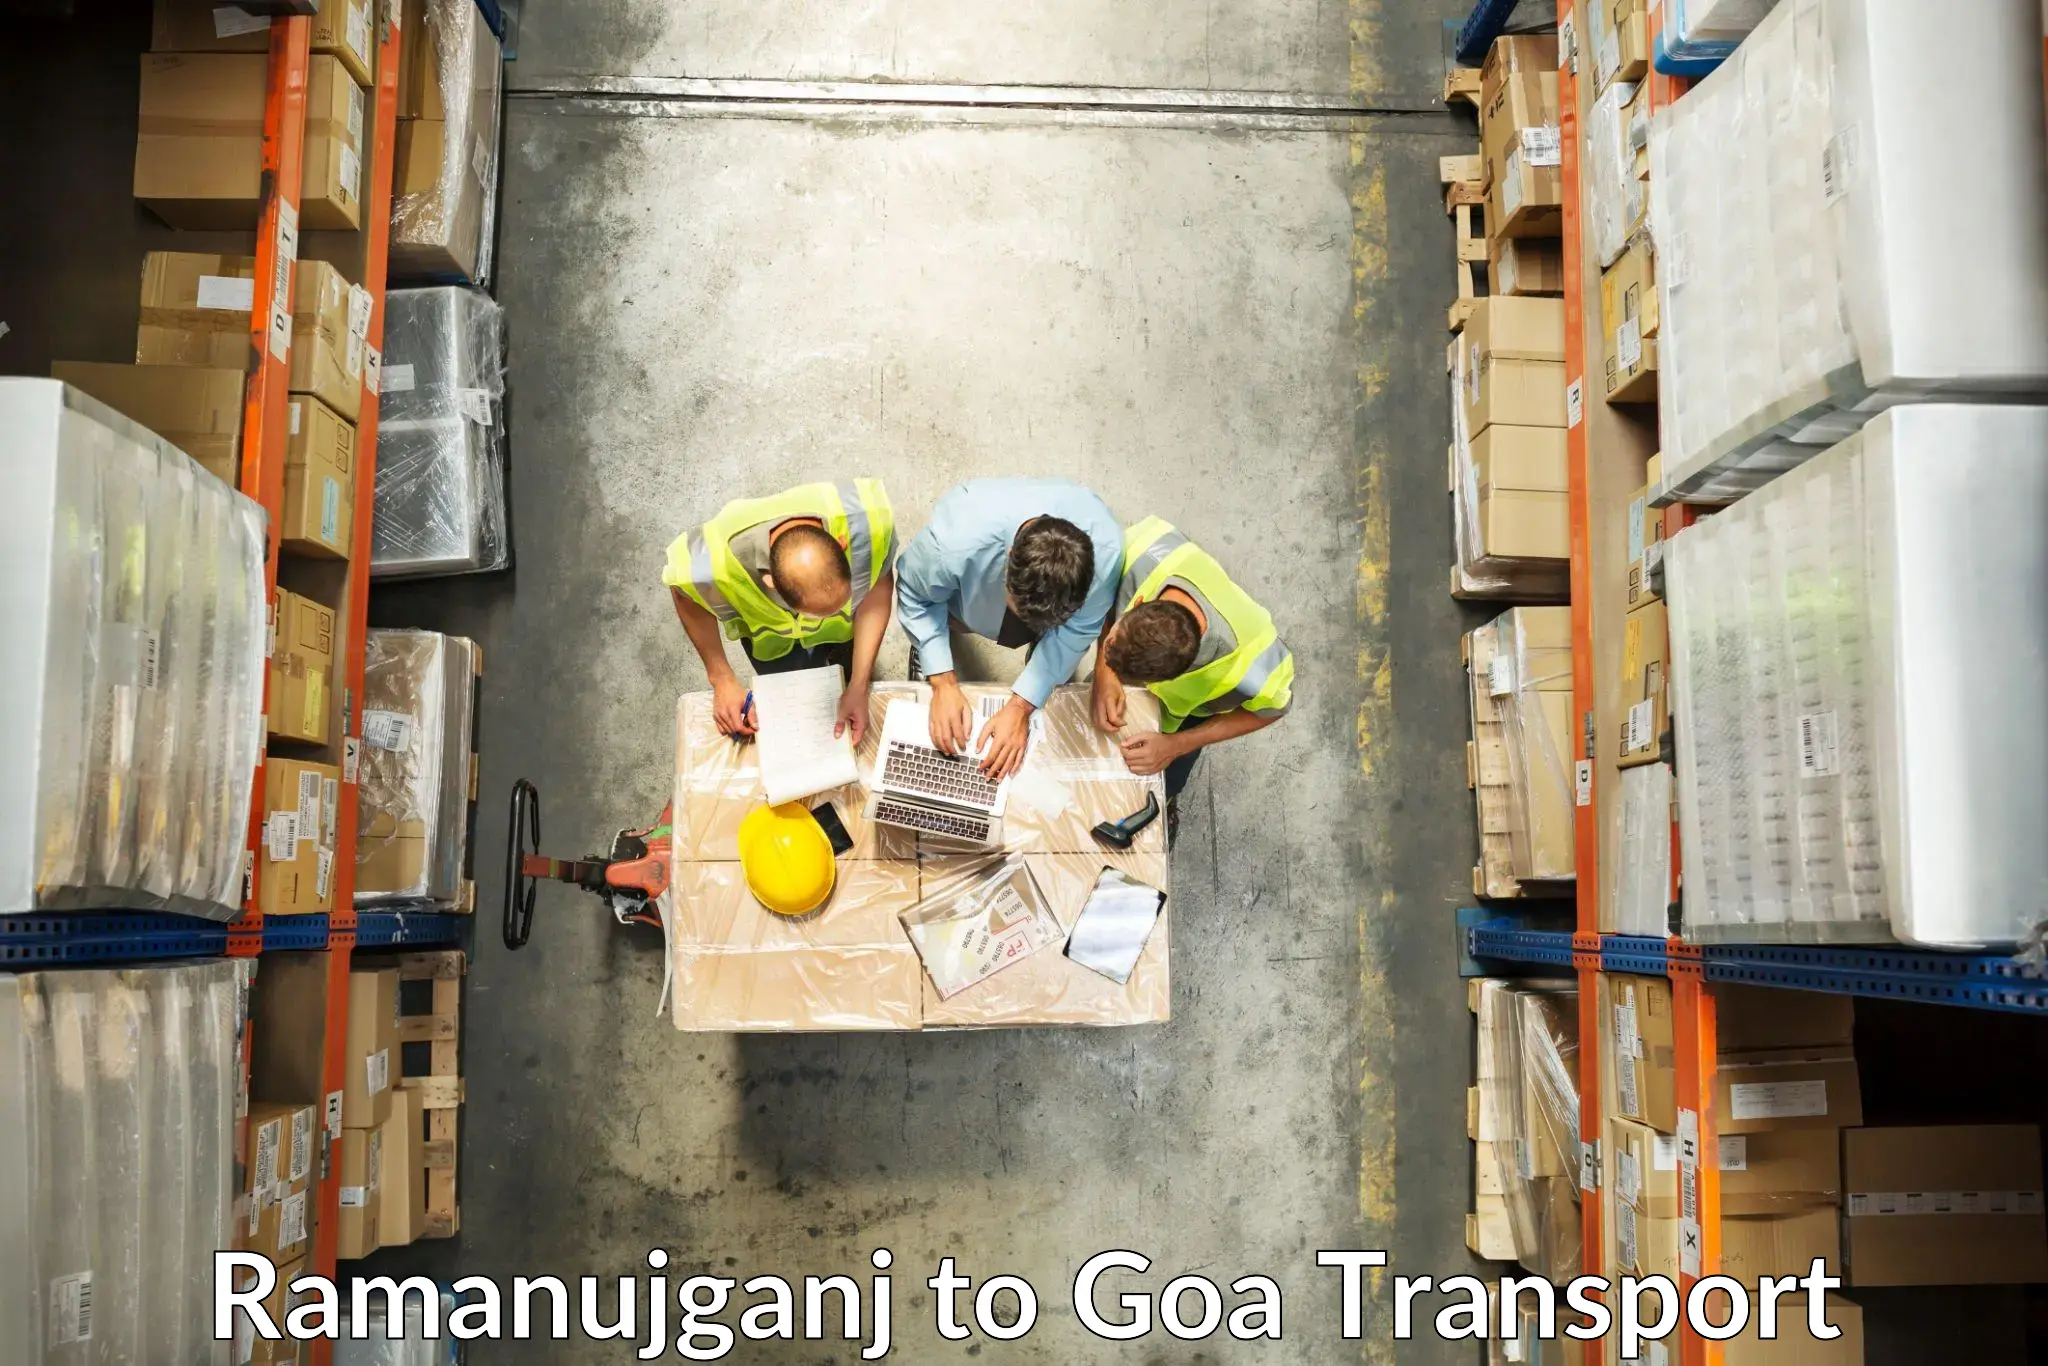 Container transport service Ramanujganj to Panjim